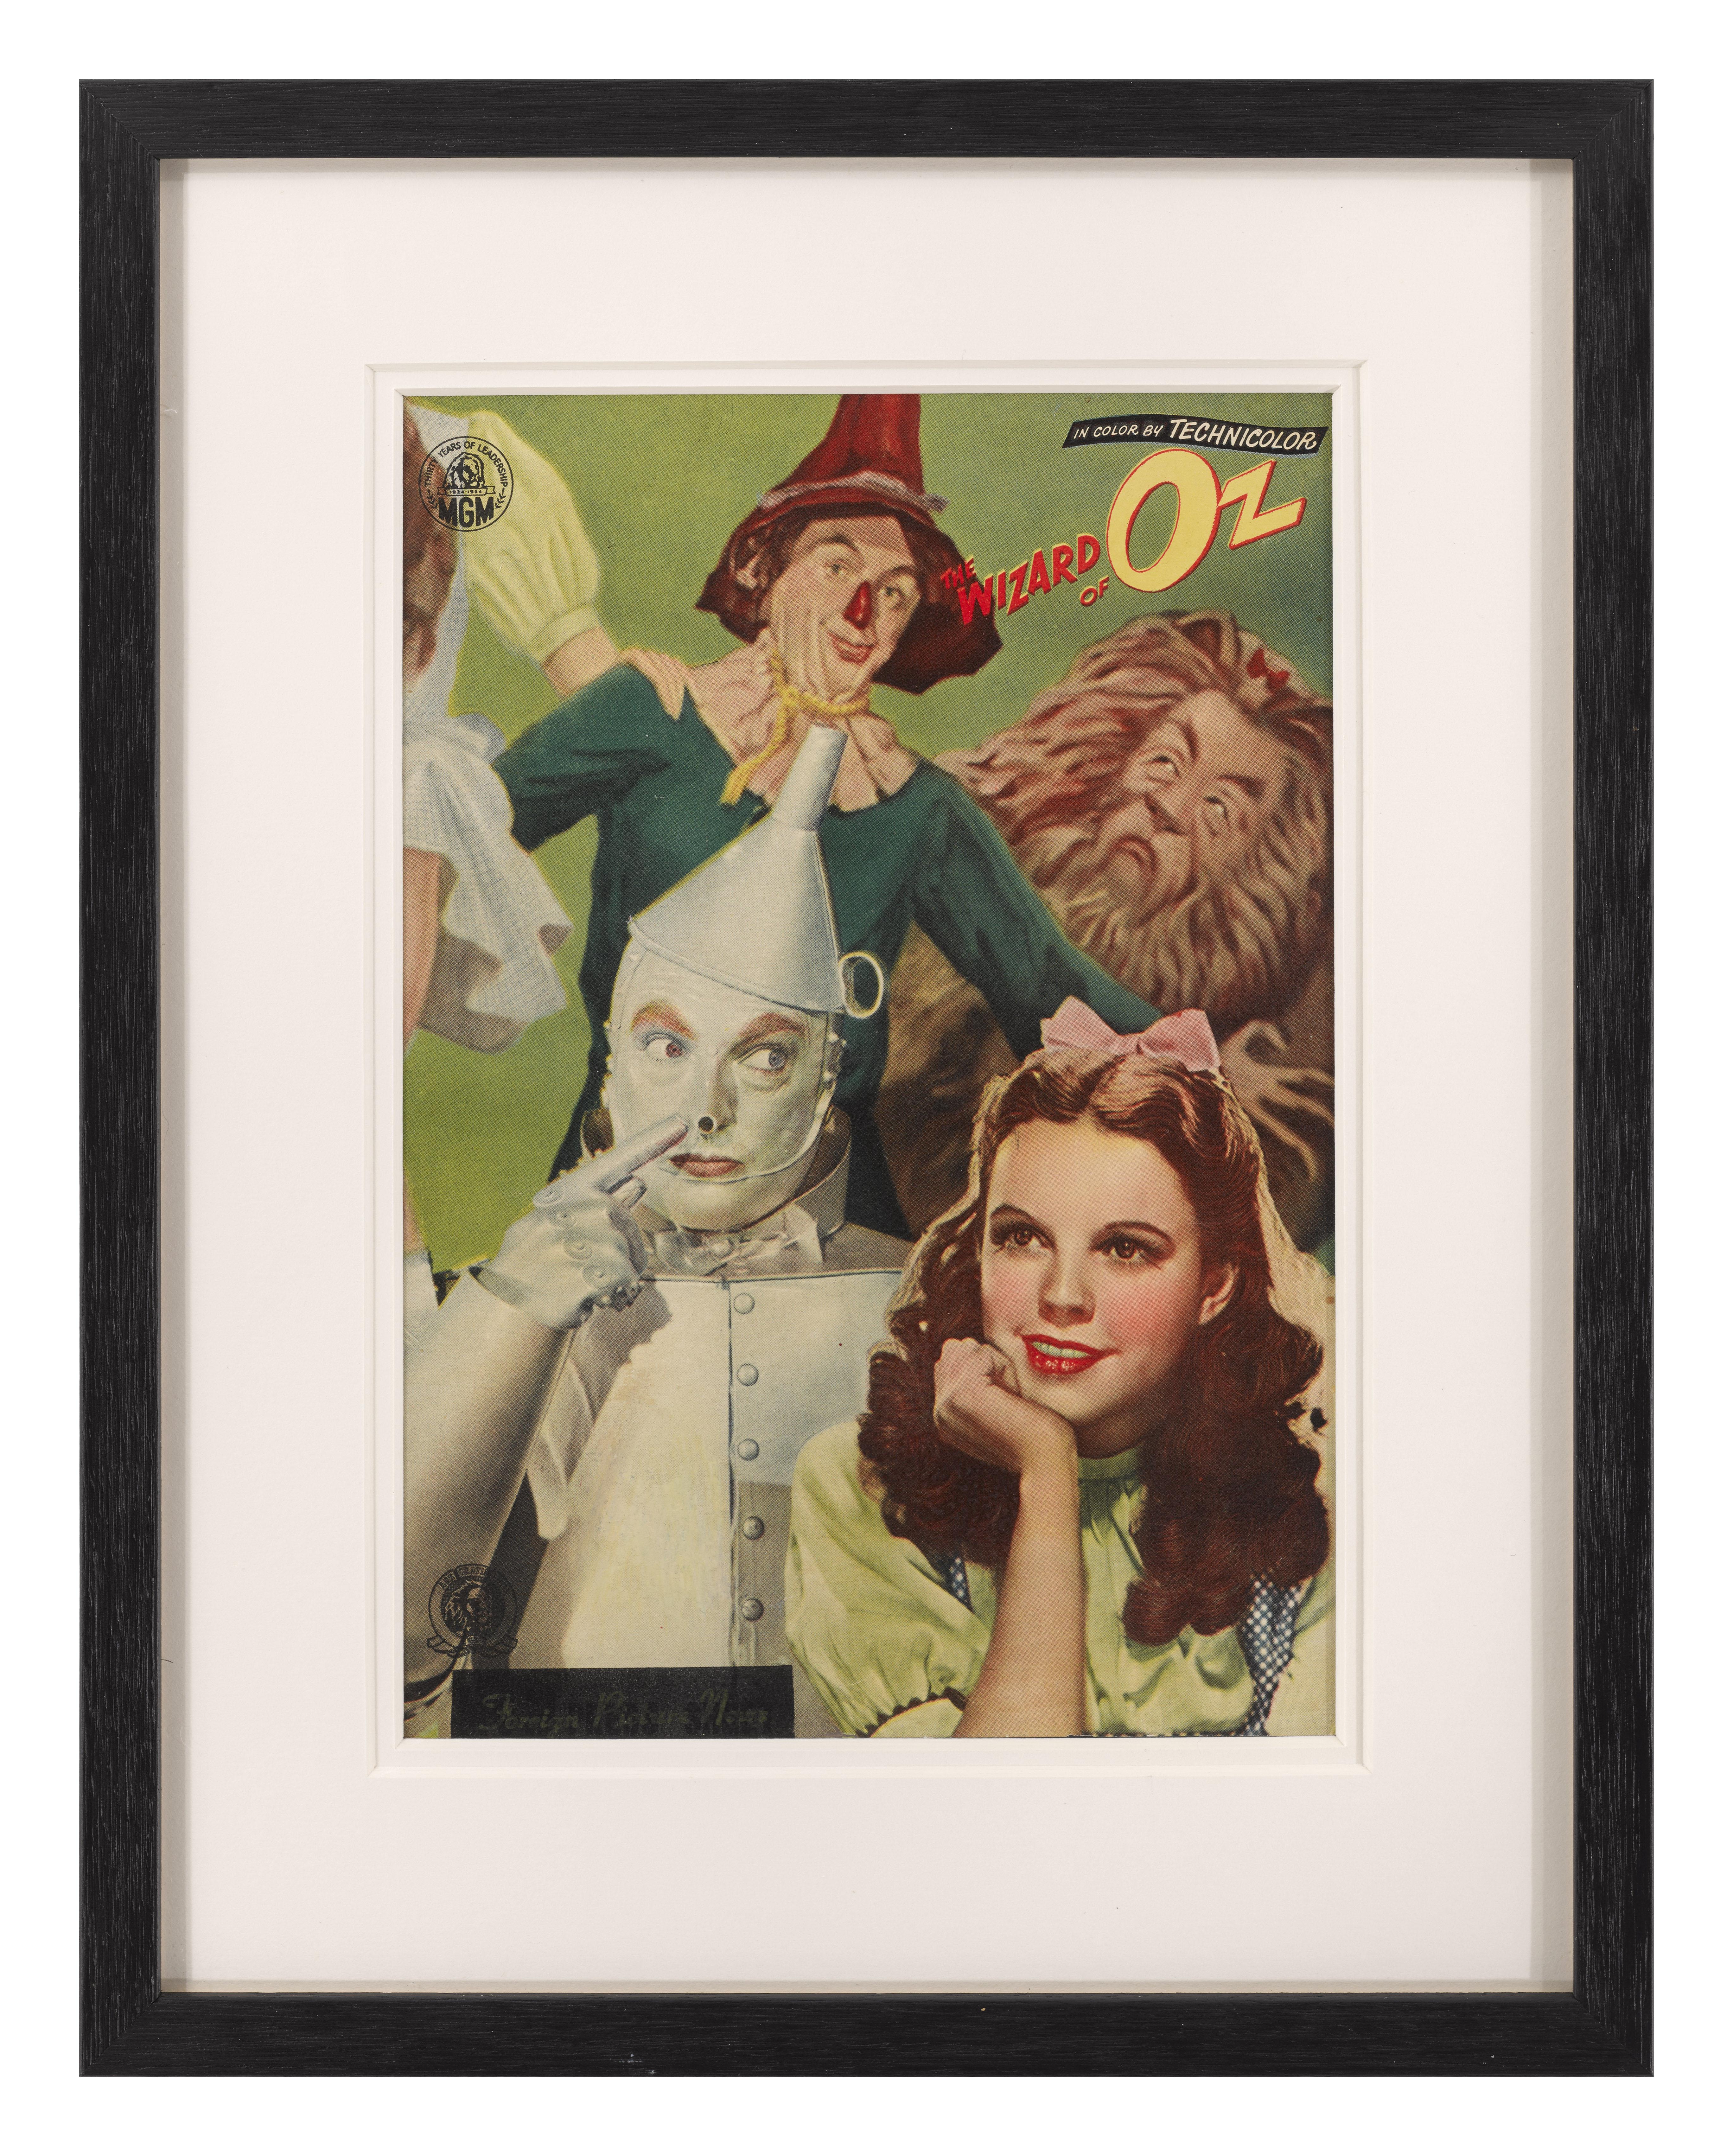 Originales japanisches Programmheft für The Wizard of Oz 1939.
Der Film wurde 1954 erstmals in Japan veröffentlicht.
Dieses Stück ist mit Konservierungspapier hinterlegt und konservatorisch gerahmt in einem Tulpenholzrahmen mit Passepartouts und